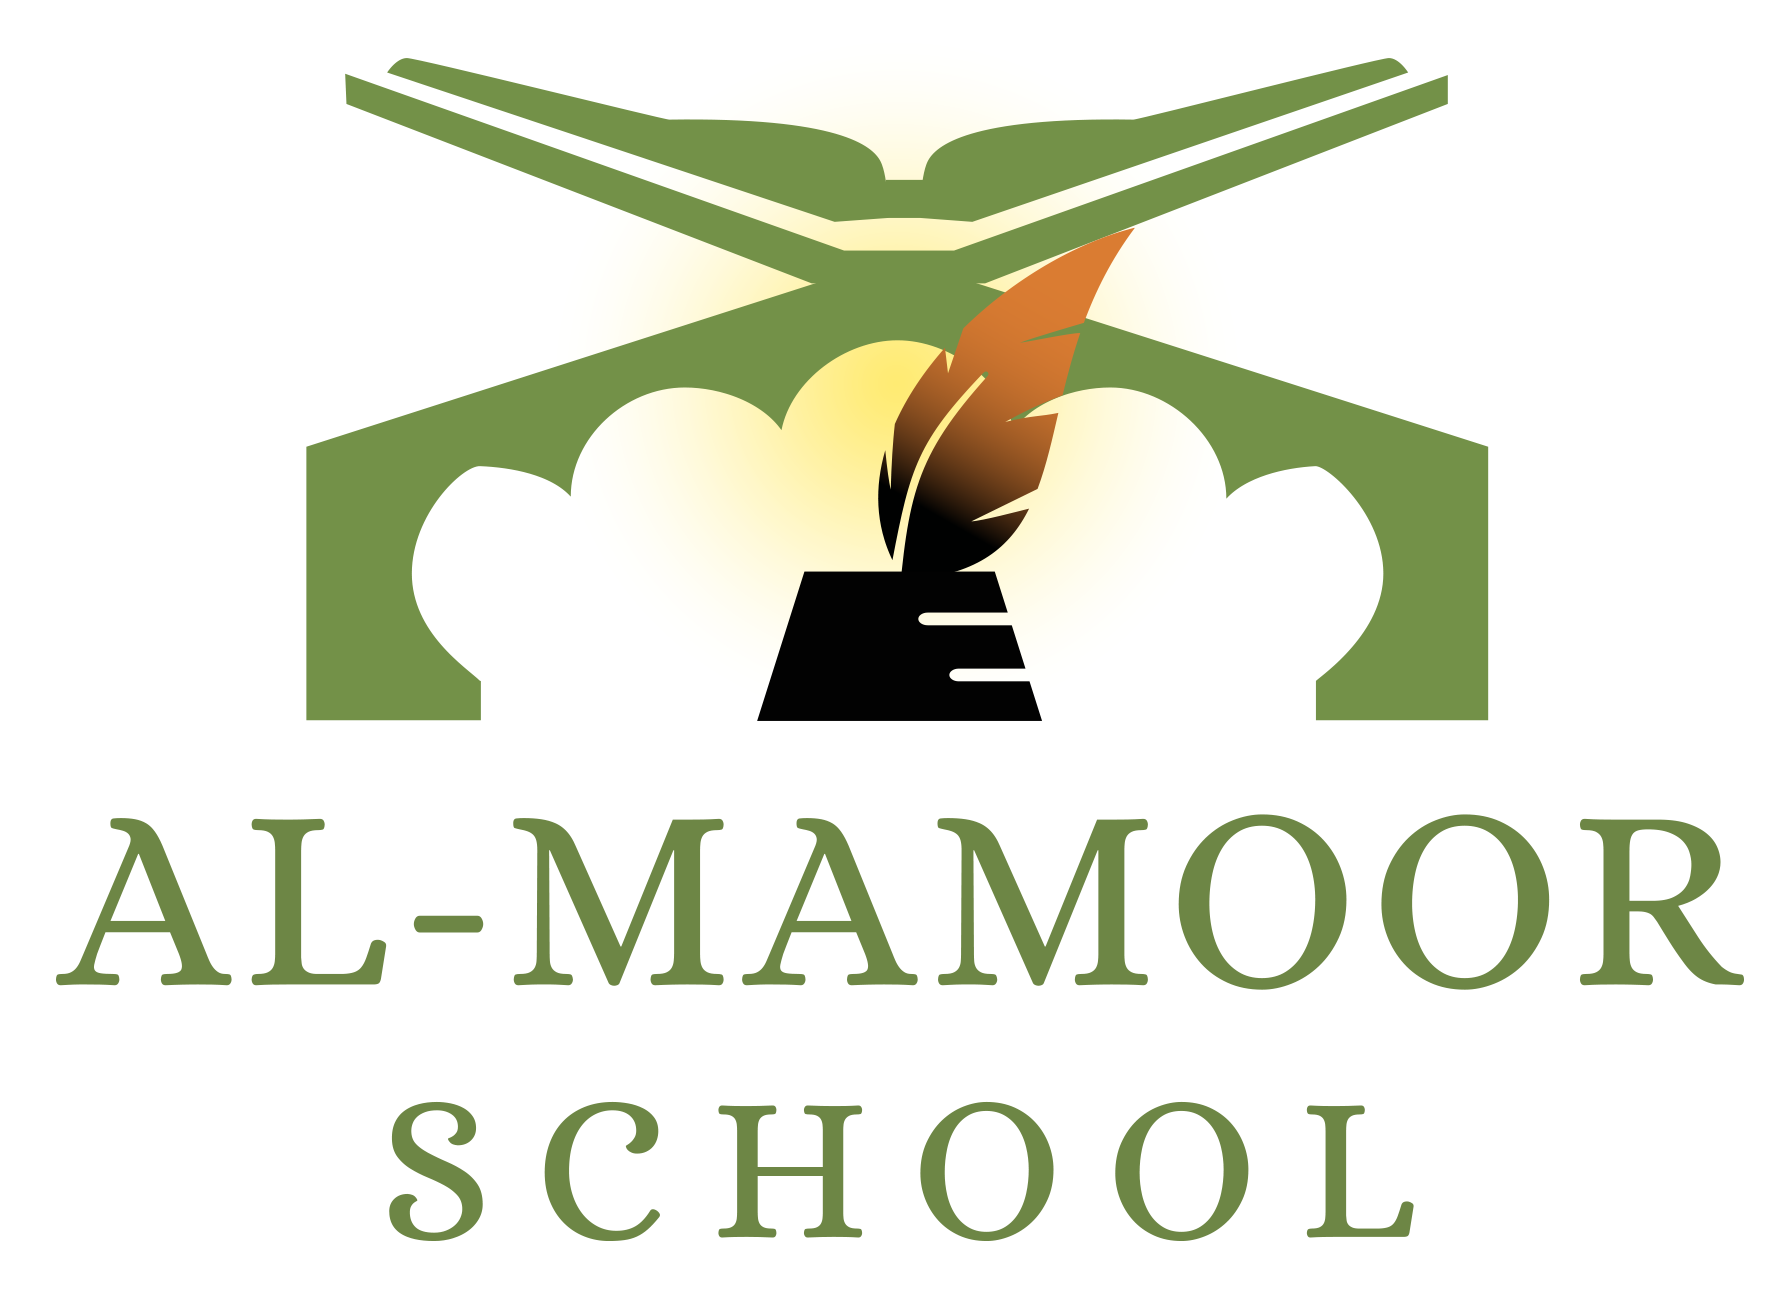 Al-Mamoor School